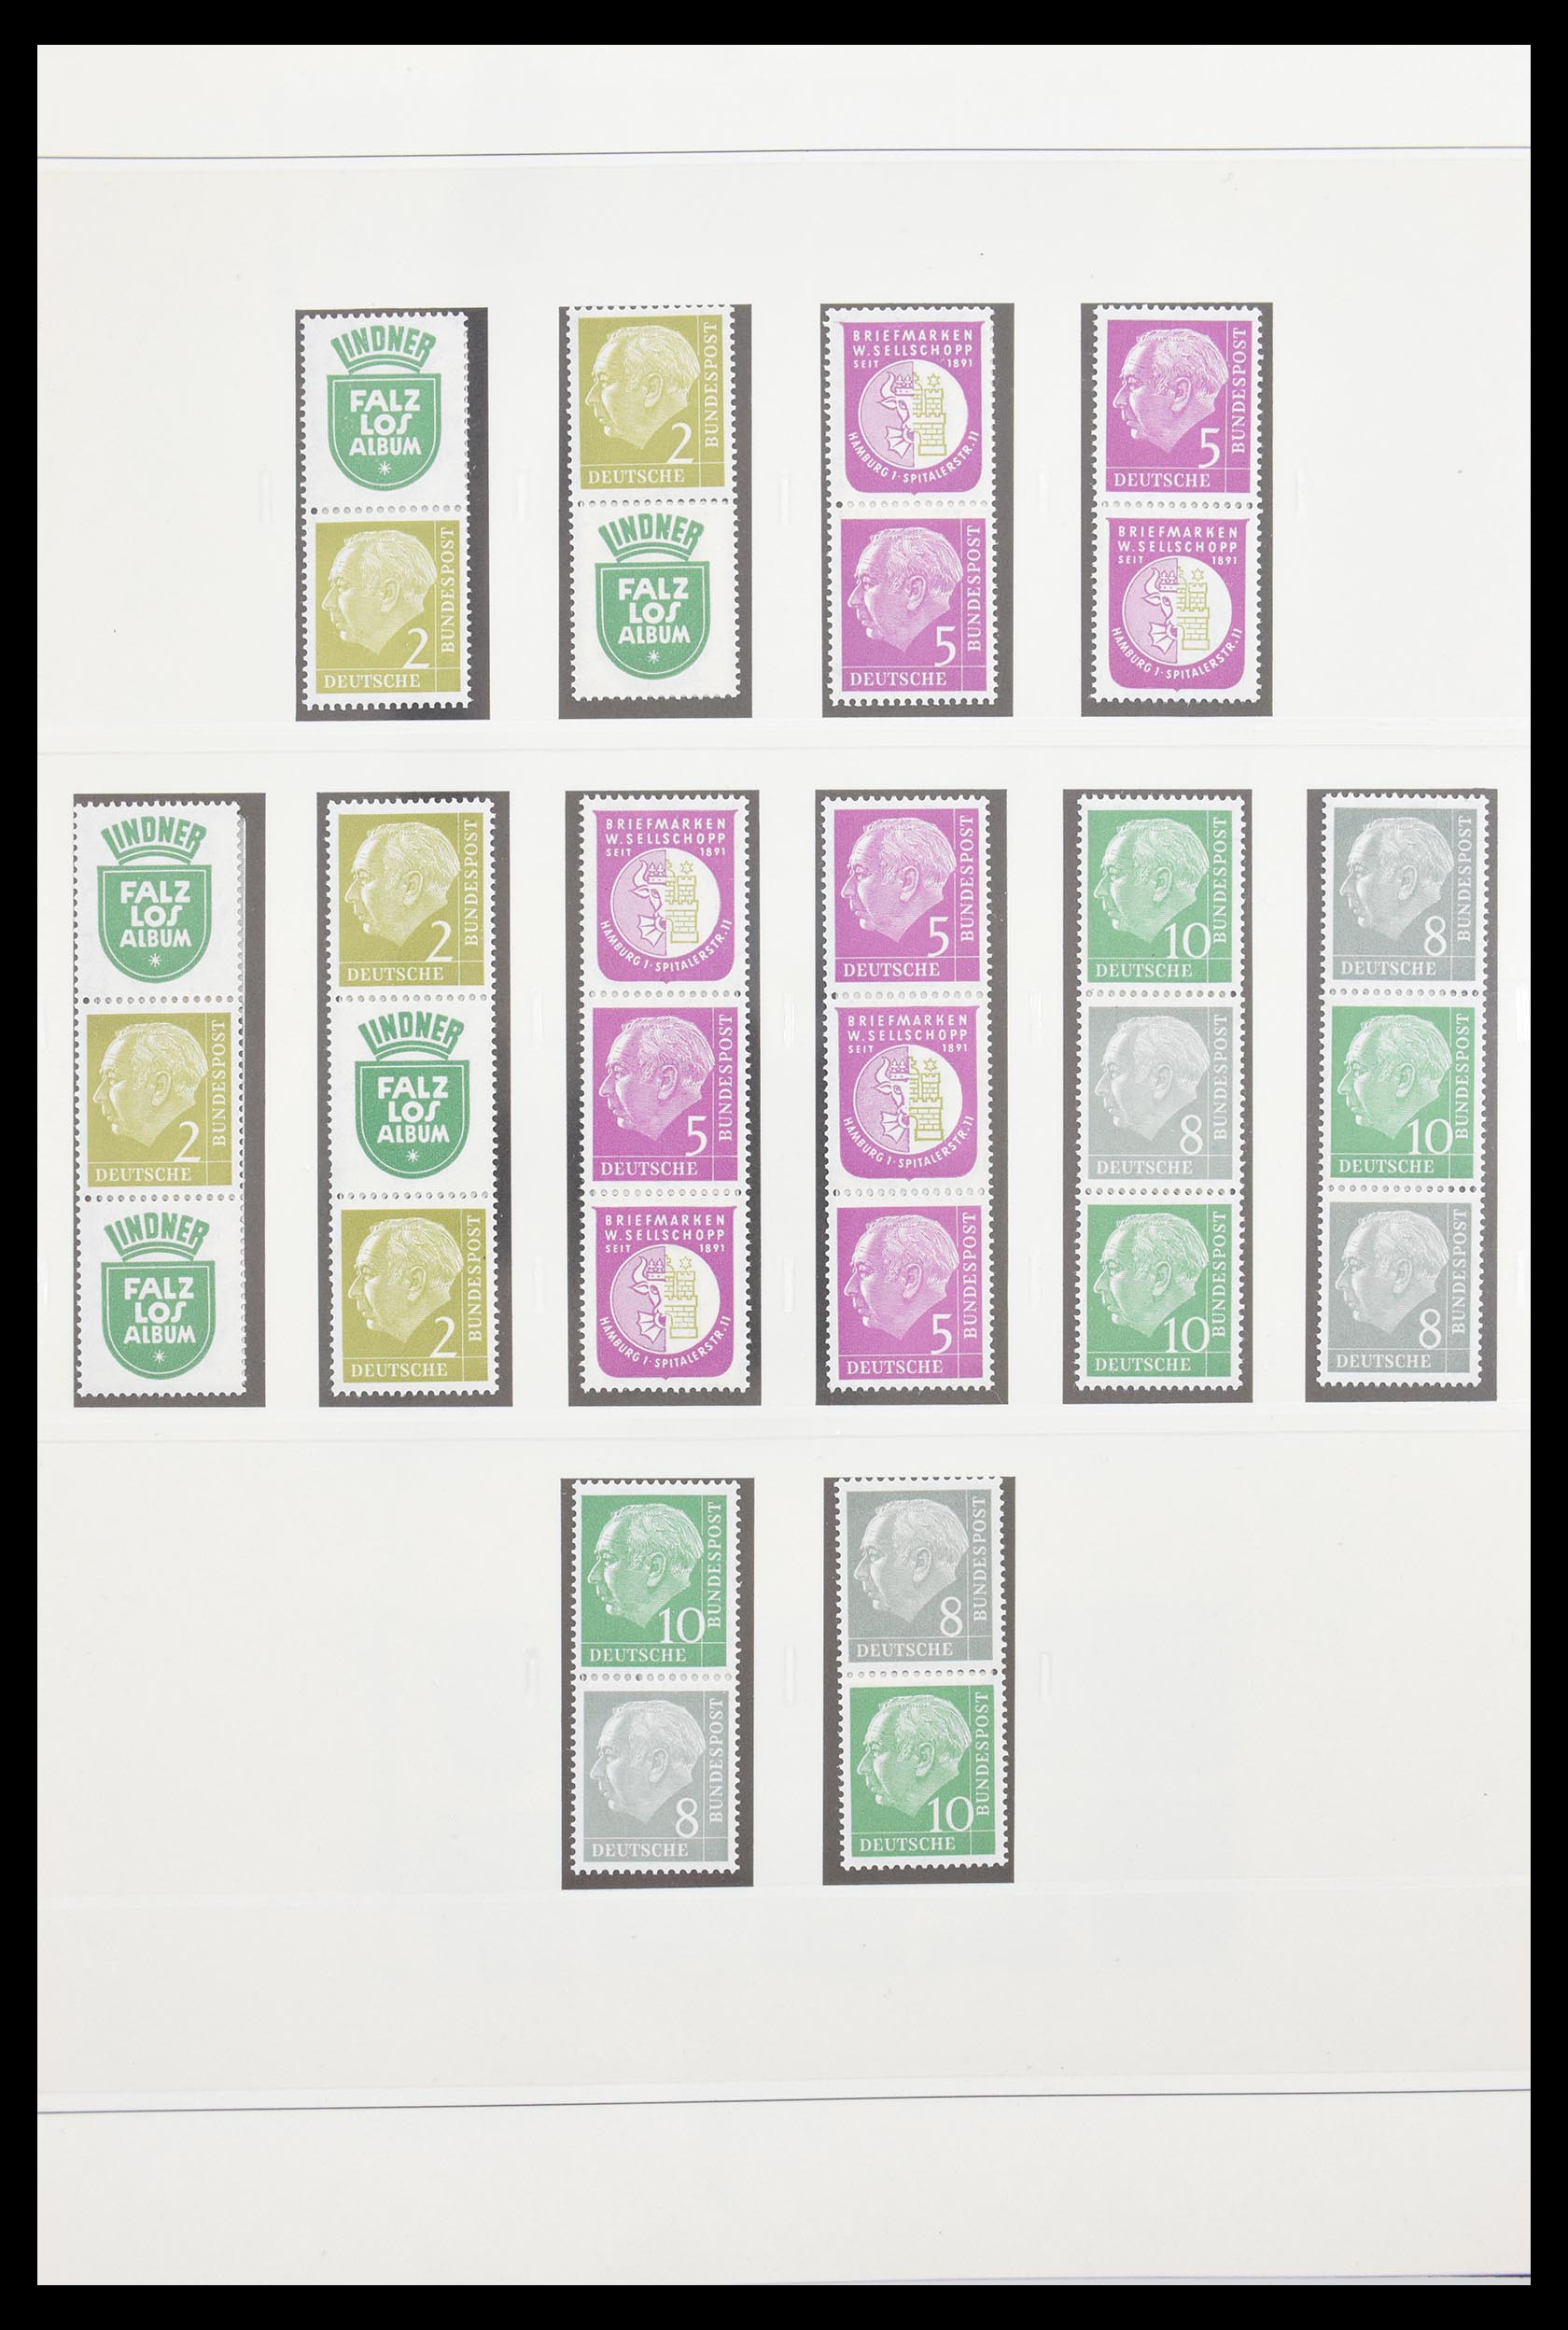 30605 008 - 30605 Bundespost combinaties 1951-1974.